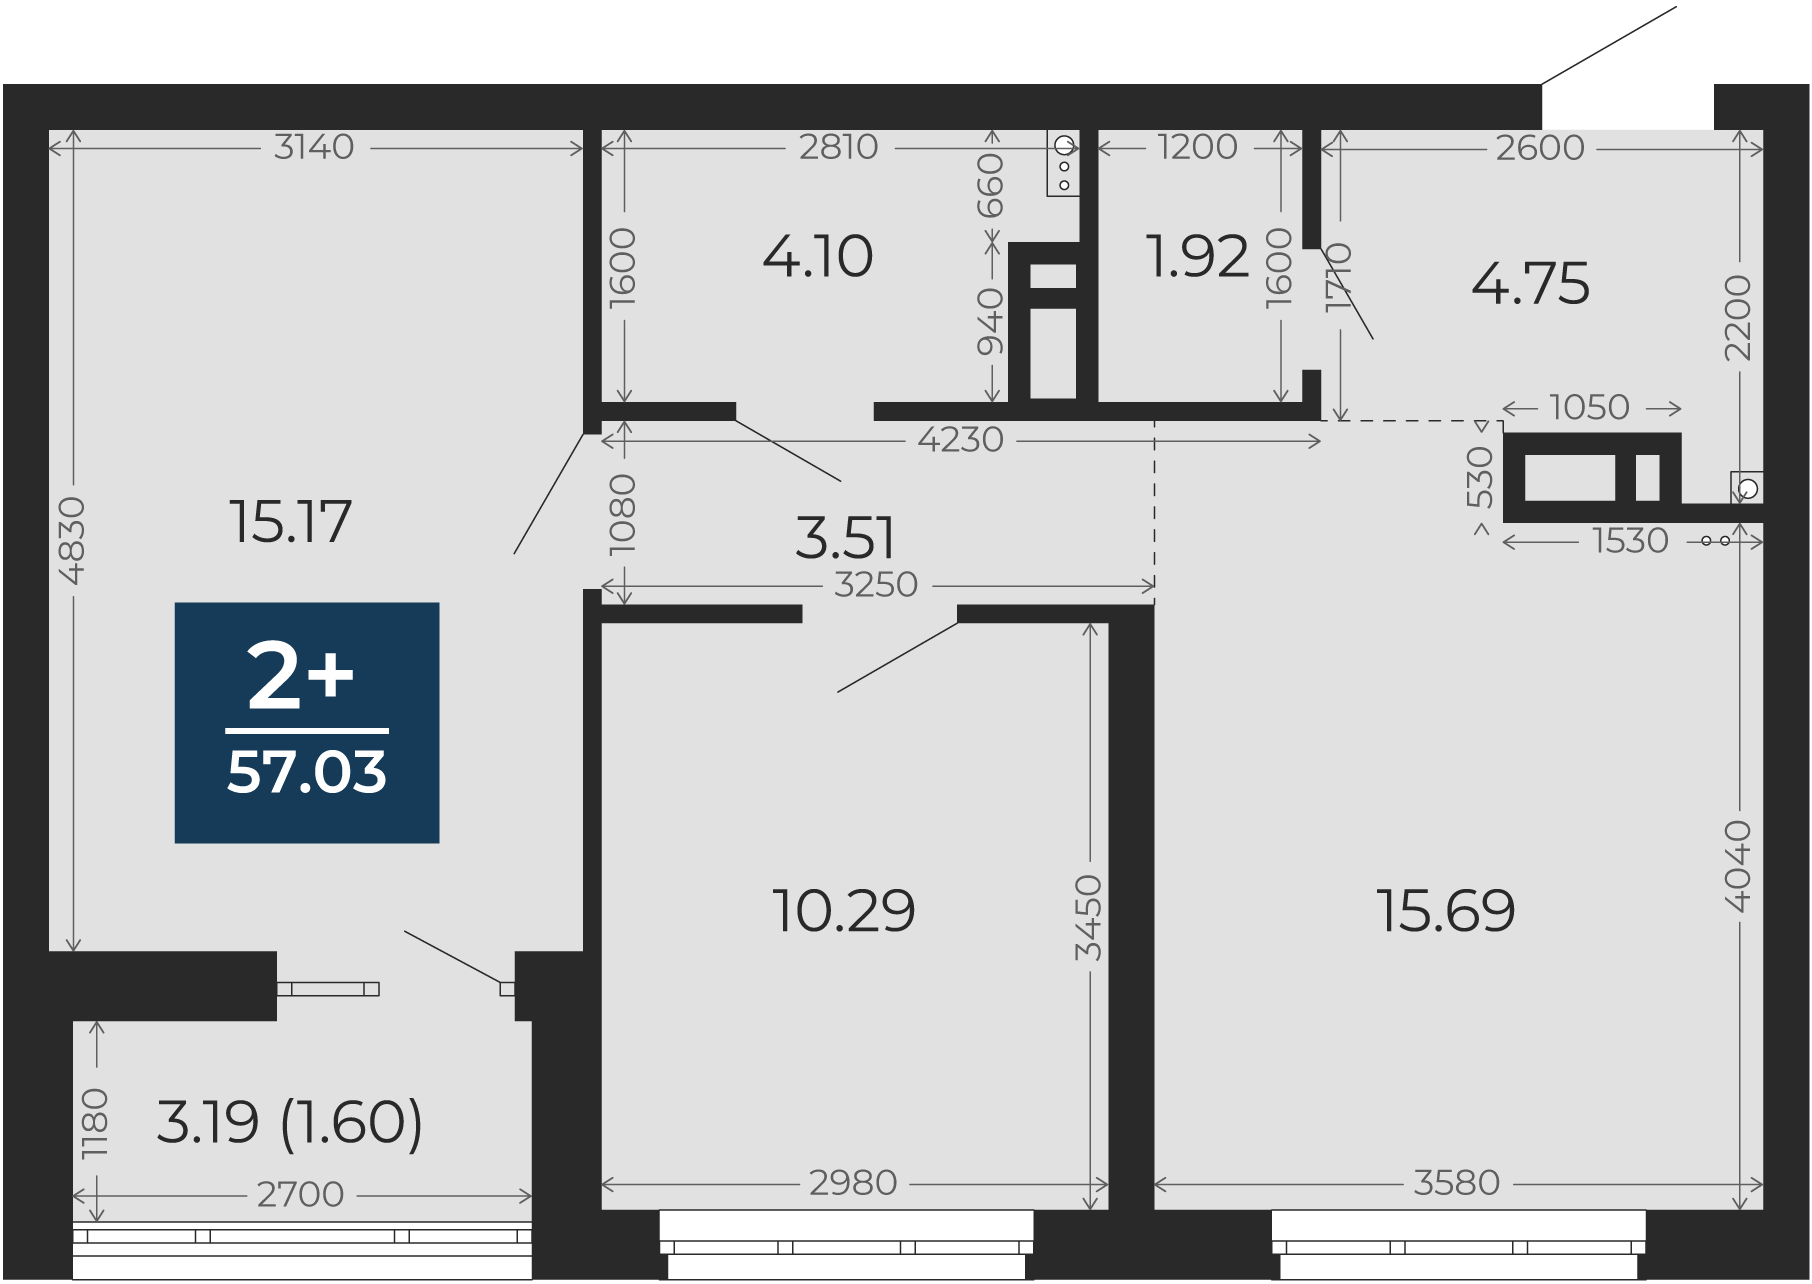 Квартира № 389, 2-комнатная, 57.03 кв. м, 8 этаж